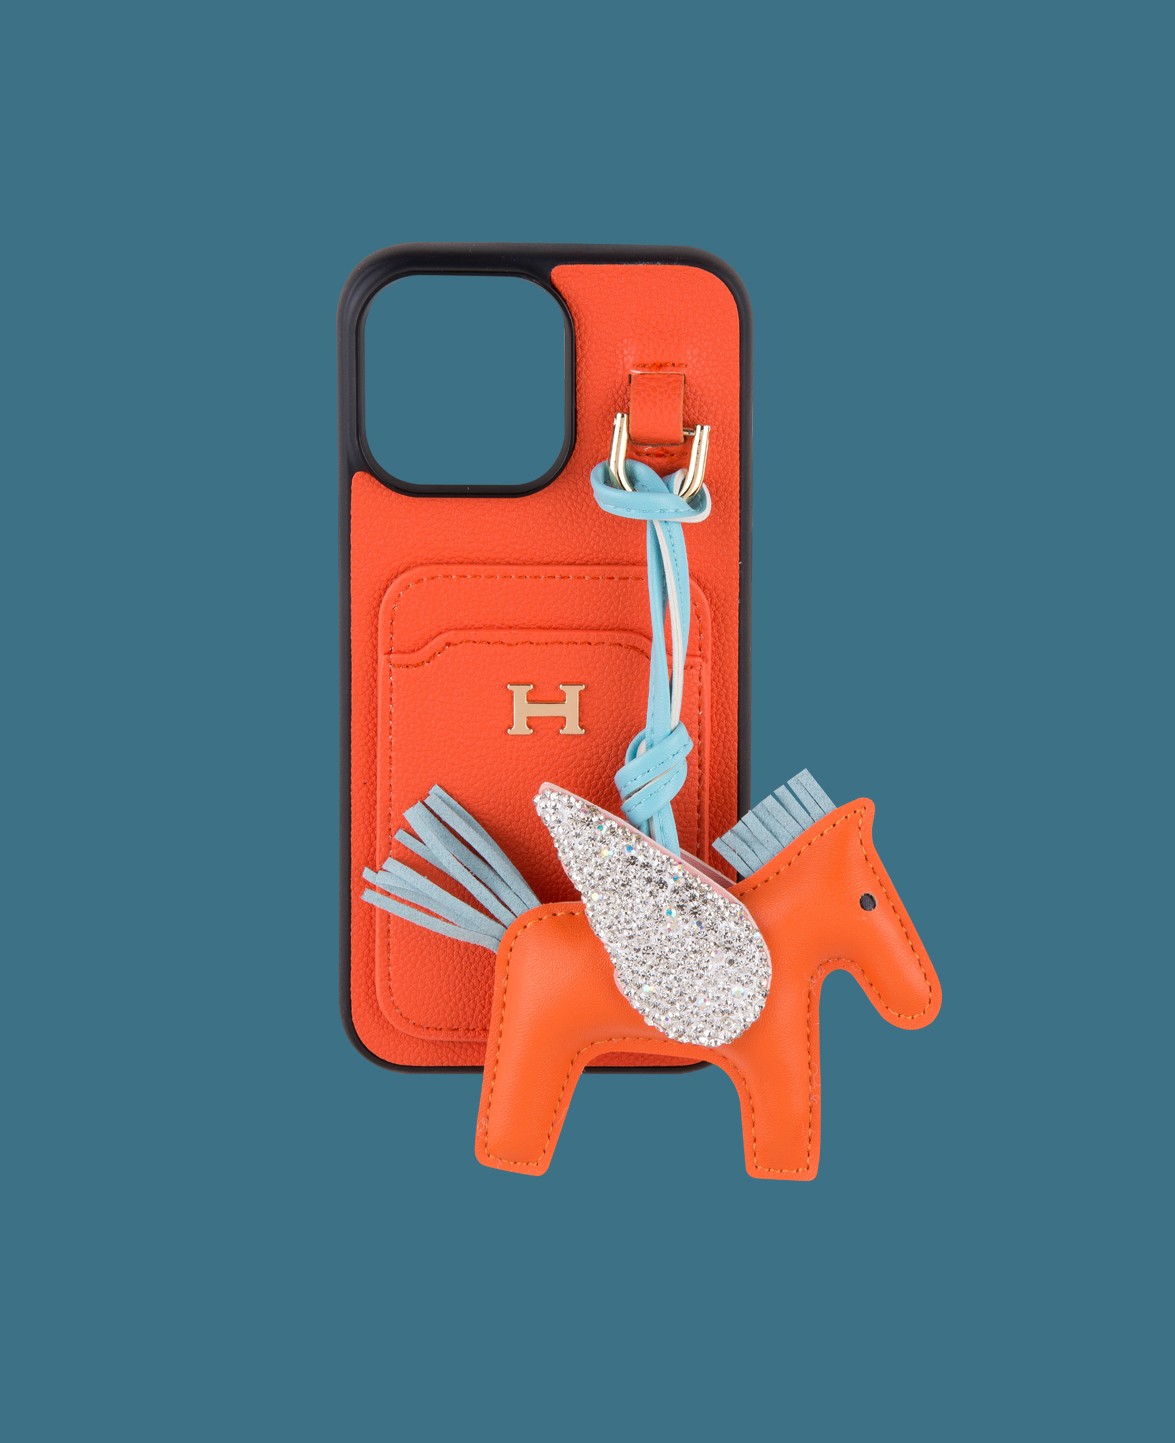 Turuncu Kartlıklı Oyuncaklı Telefon Kılıfı - DK182 - iPhone 15 Pro